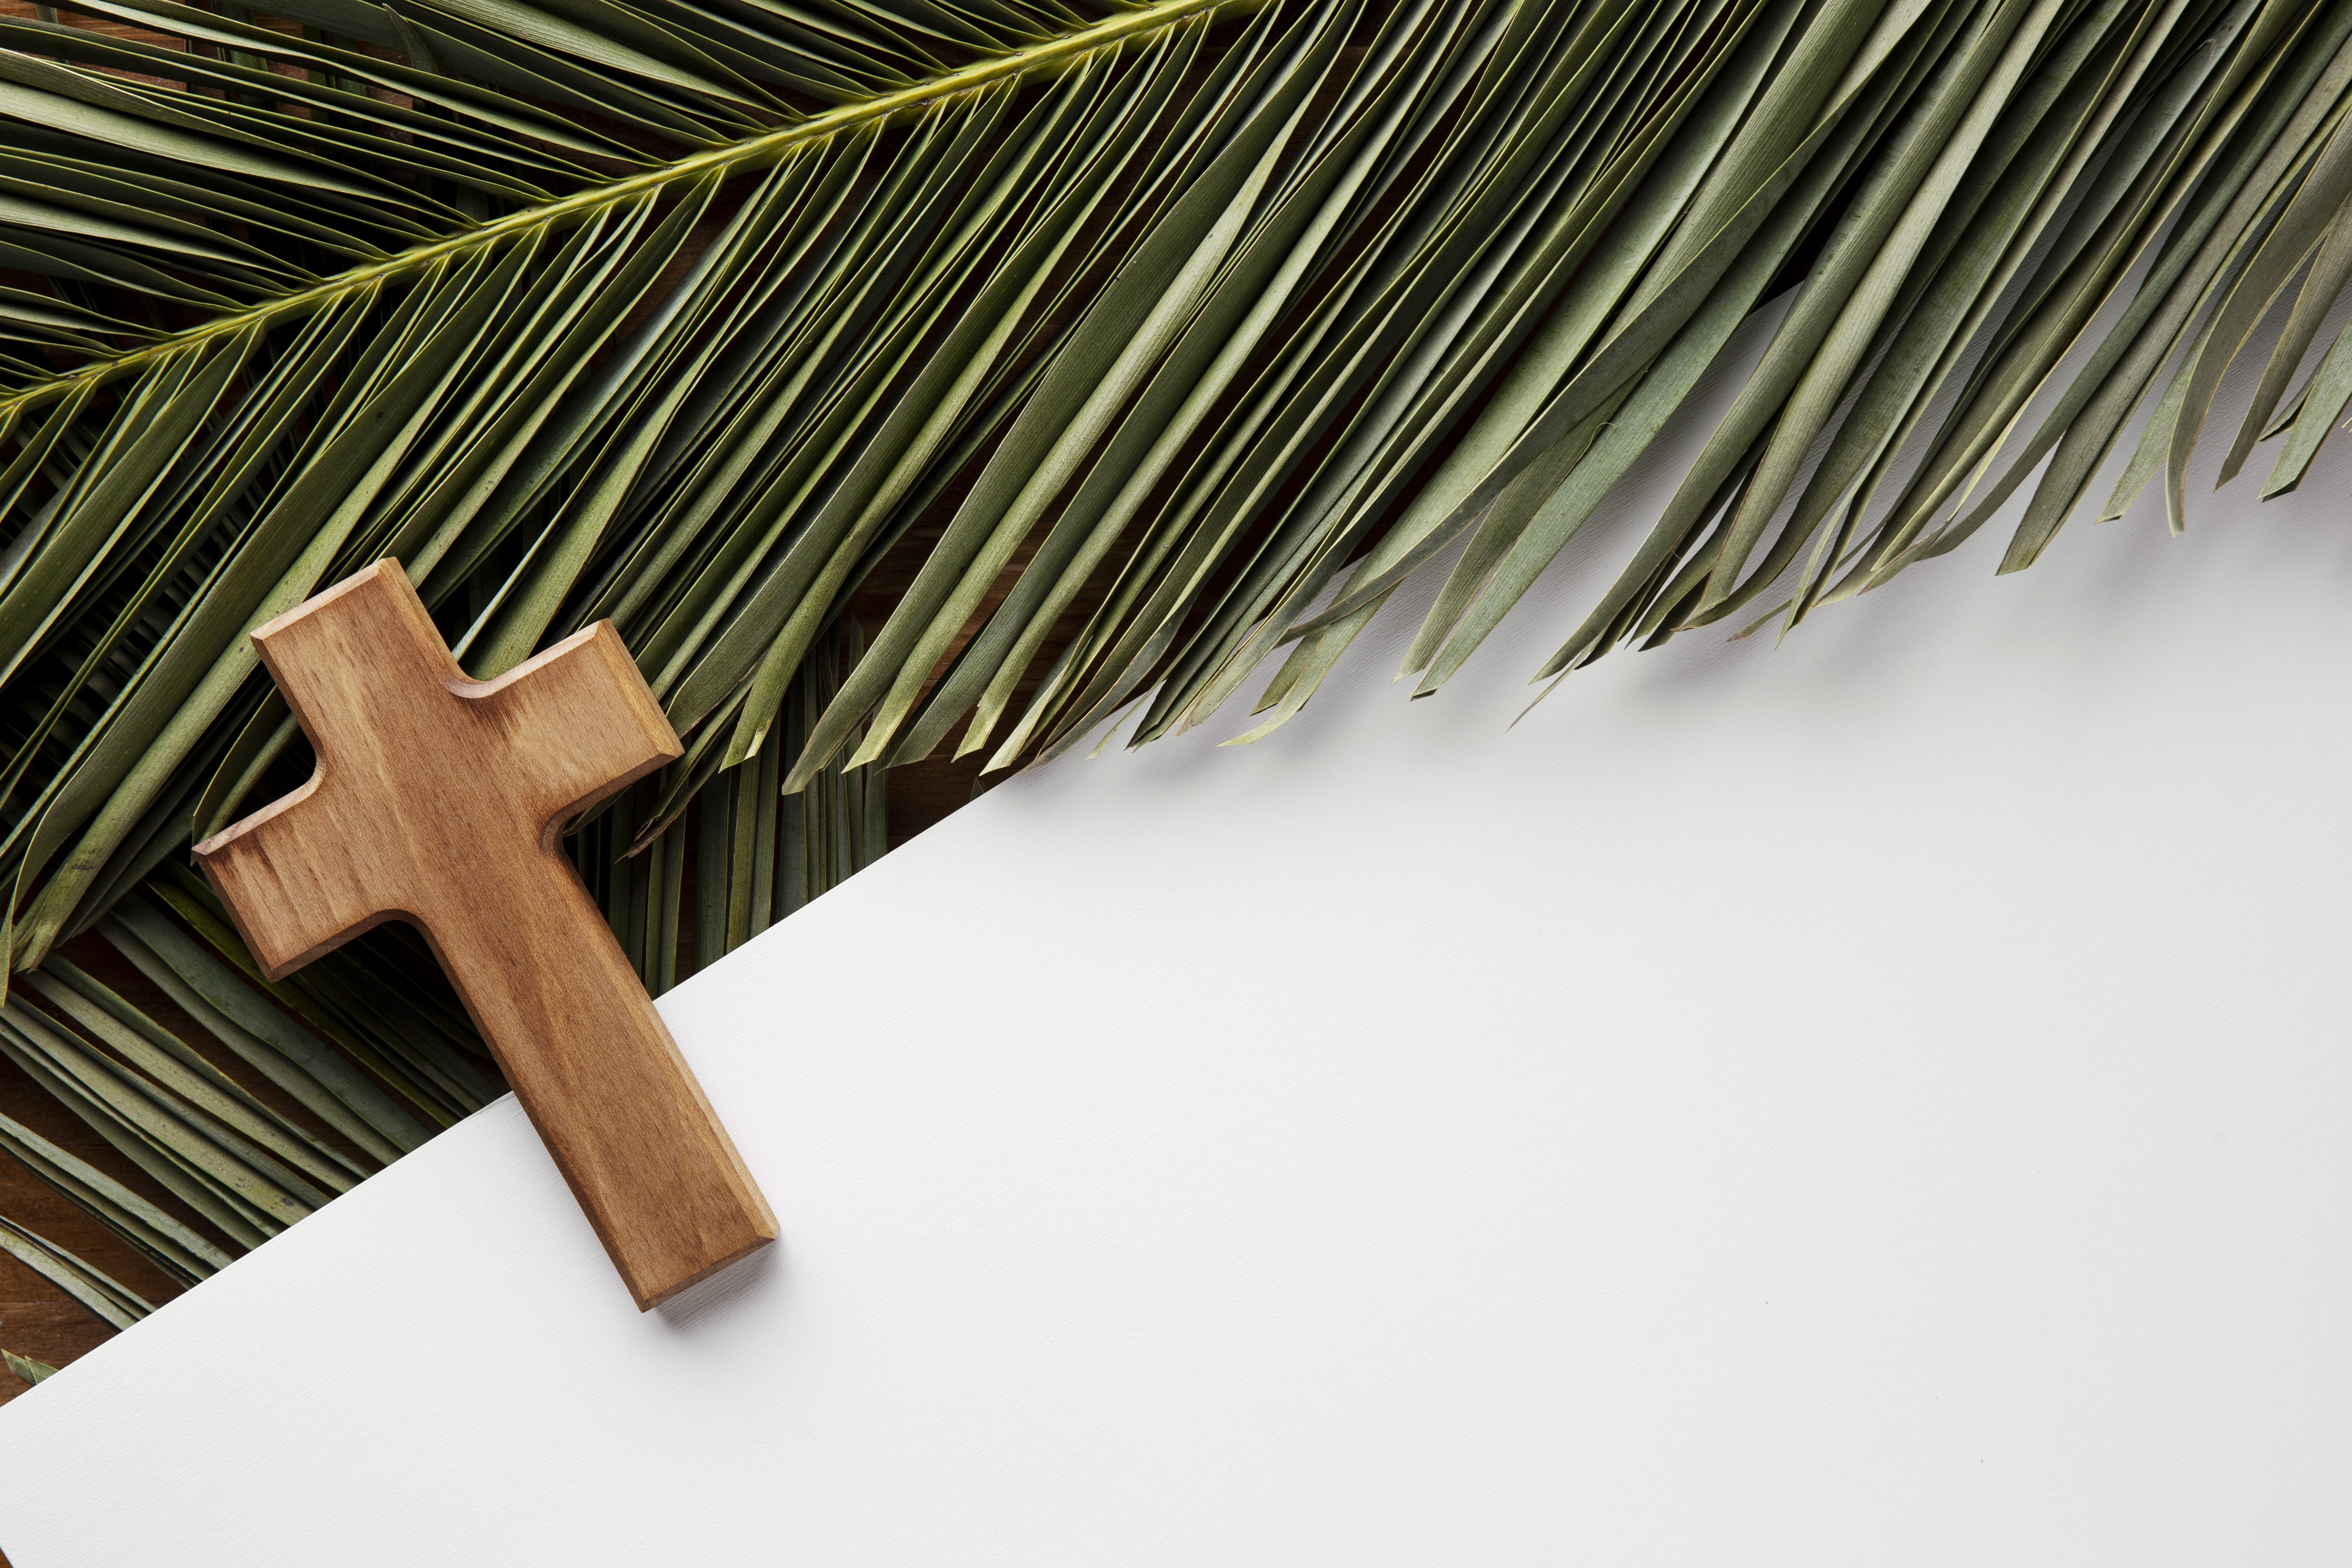 Christliches Kreuz vor einer Palme